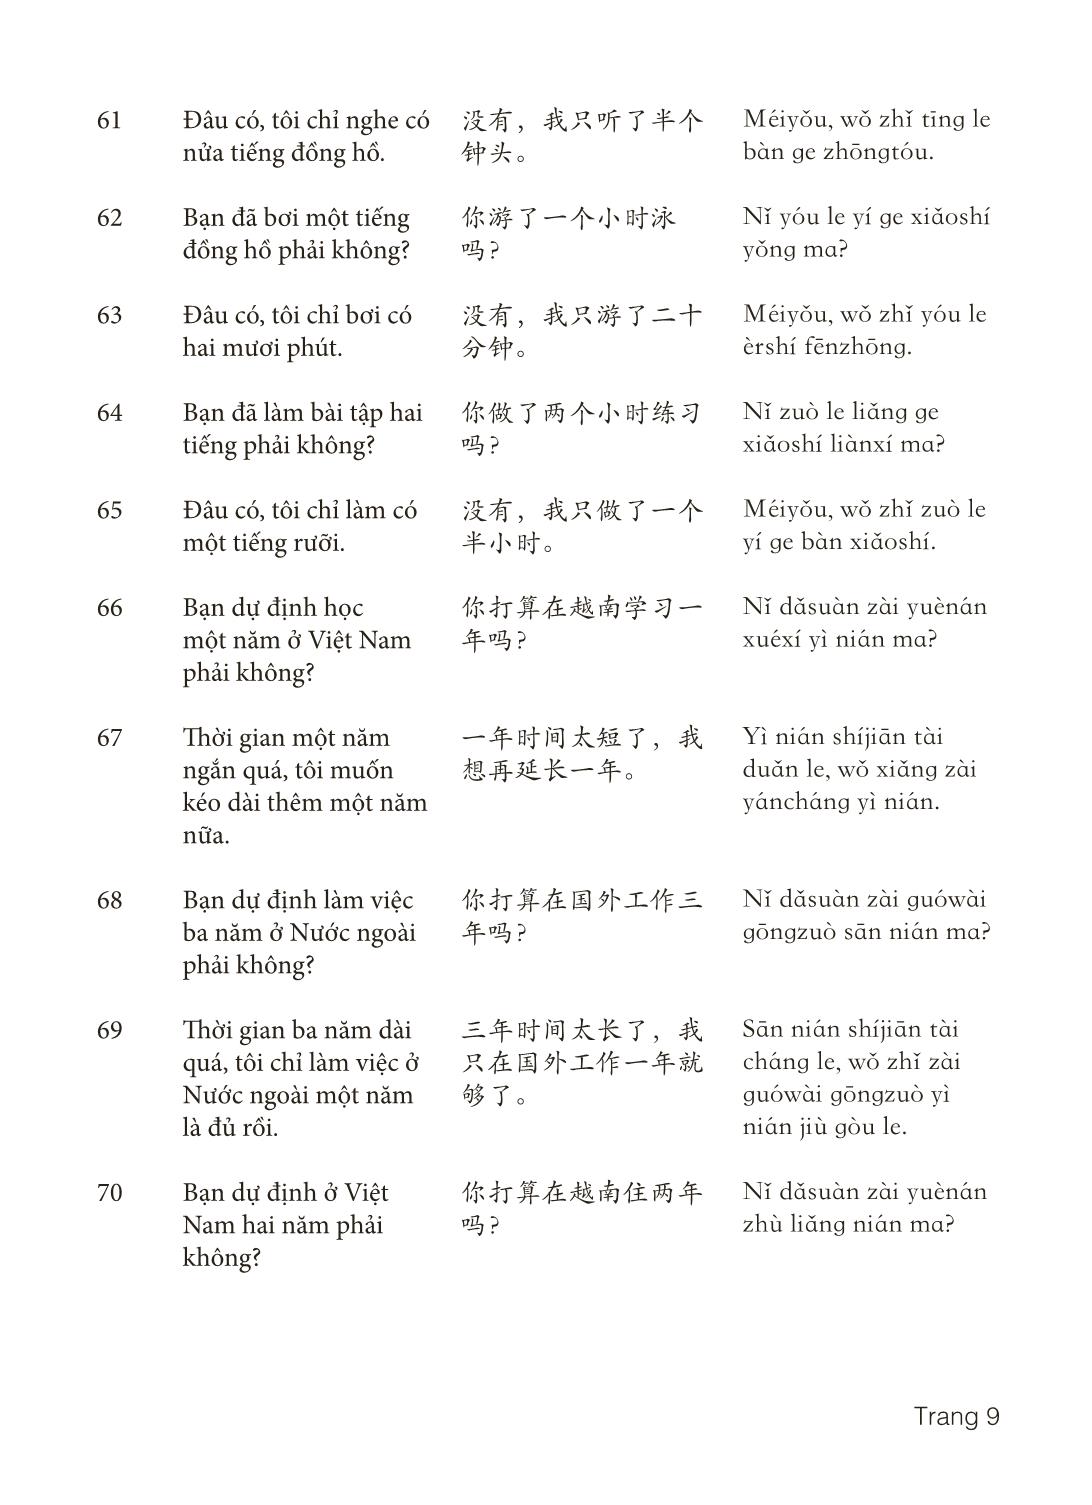 3000 Câu đàm thoại tiếng Hoa - Phần 13 trang 9